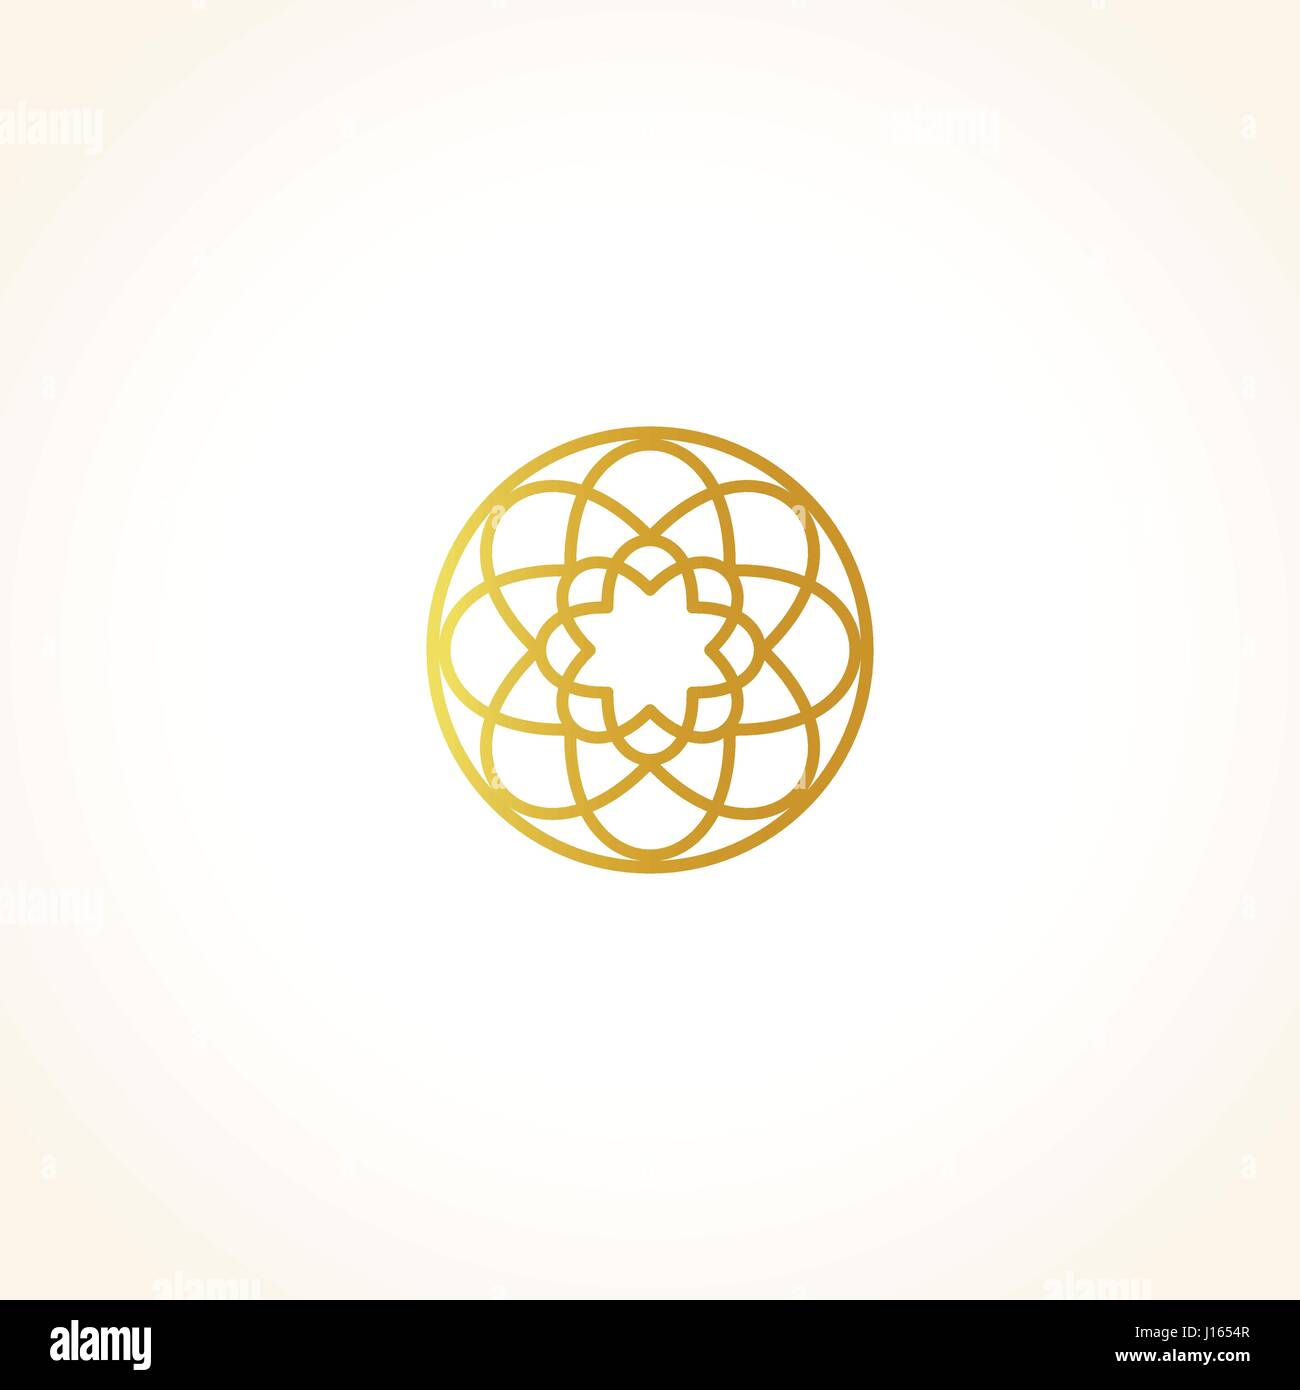 Isolierte abstrakt Runde Form goldene Farbe Logo, dekorative luxuriösen gold Logo, Vektor-Illustration Blumenmuster auf schwarzem Hintergrund Stock Vektor